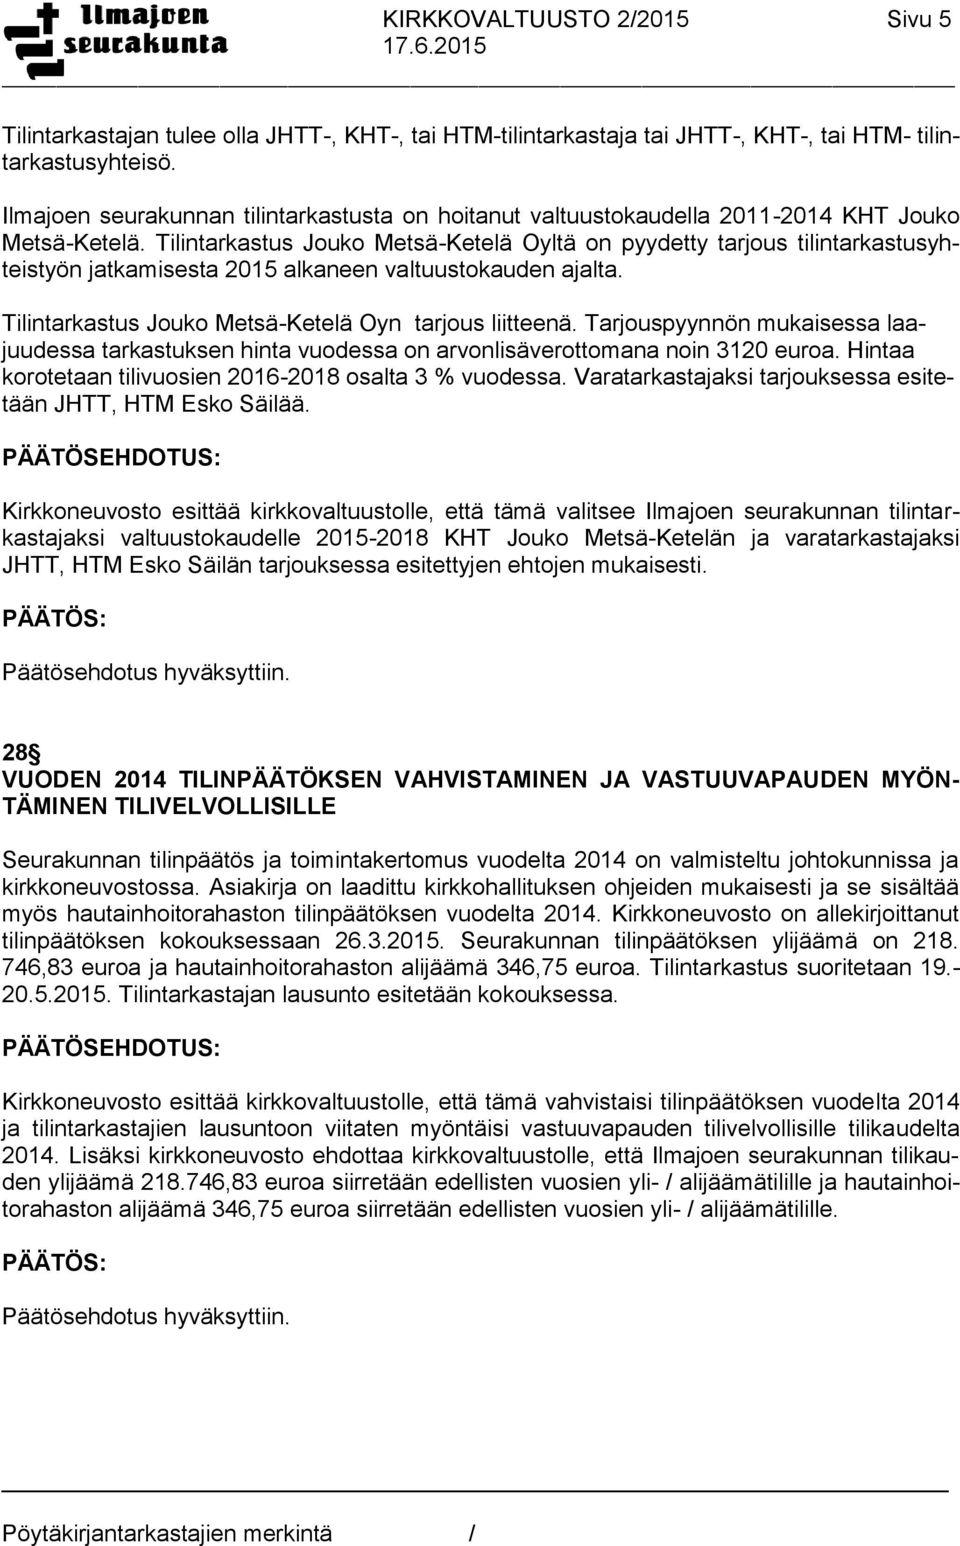 Tilintarkastus Jouko Metsä-Ketelä Oyltä on pyydetty tarjous tilintarkastusyhteistyön jatkamisesta 2015 alkaneen valtuustokauden ajalta. Tilintarkastus Jouko Metsä-Ketelä Oyn tarjous liitteenä.